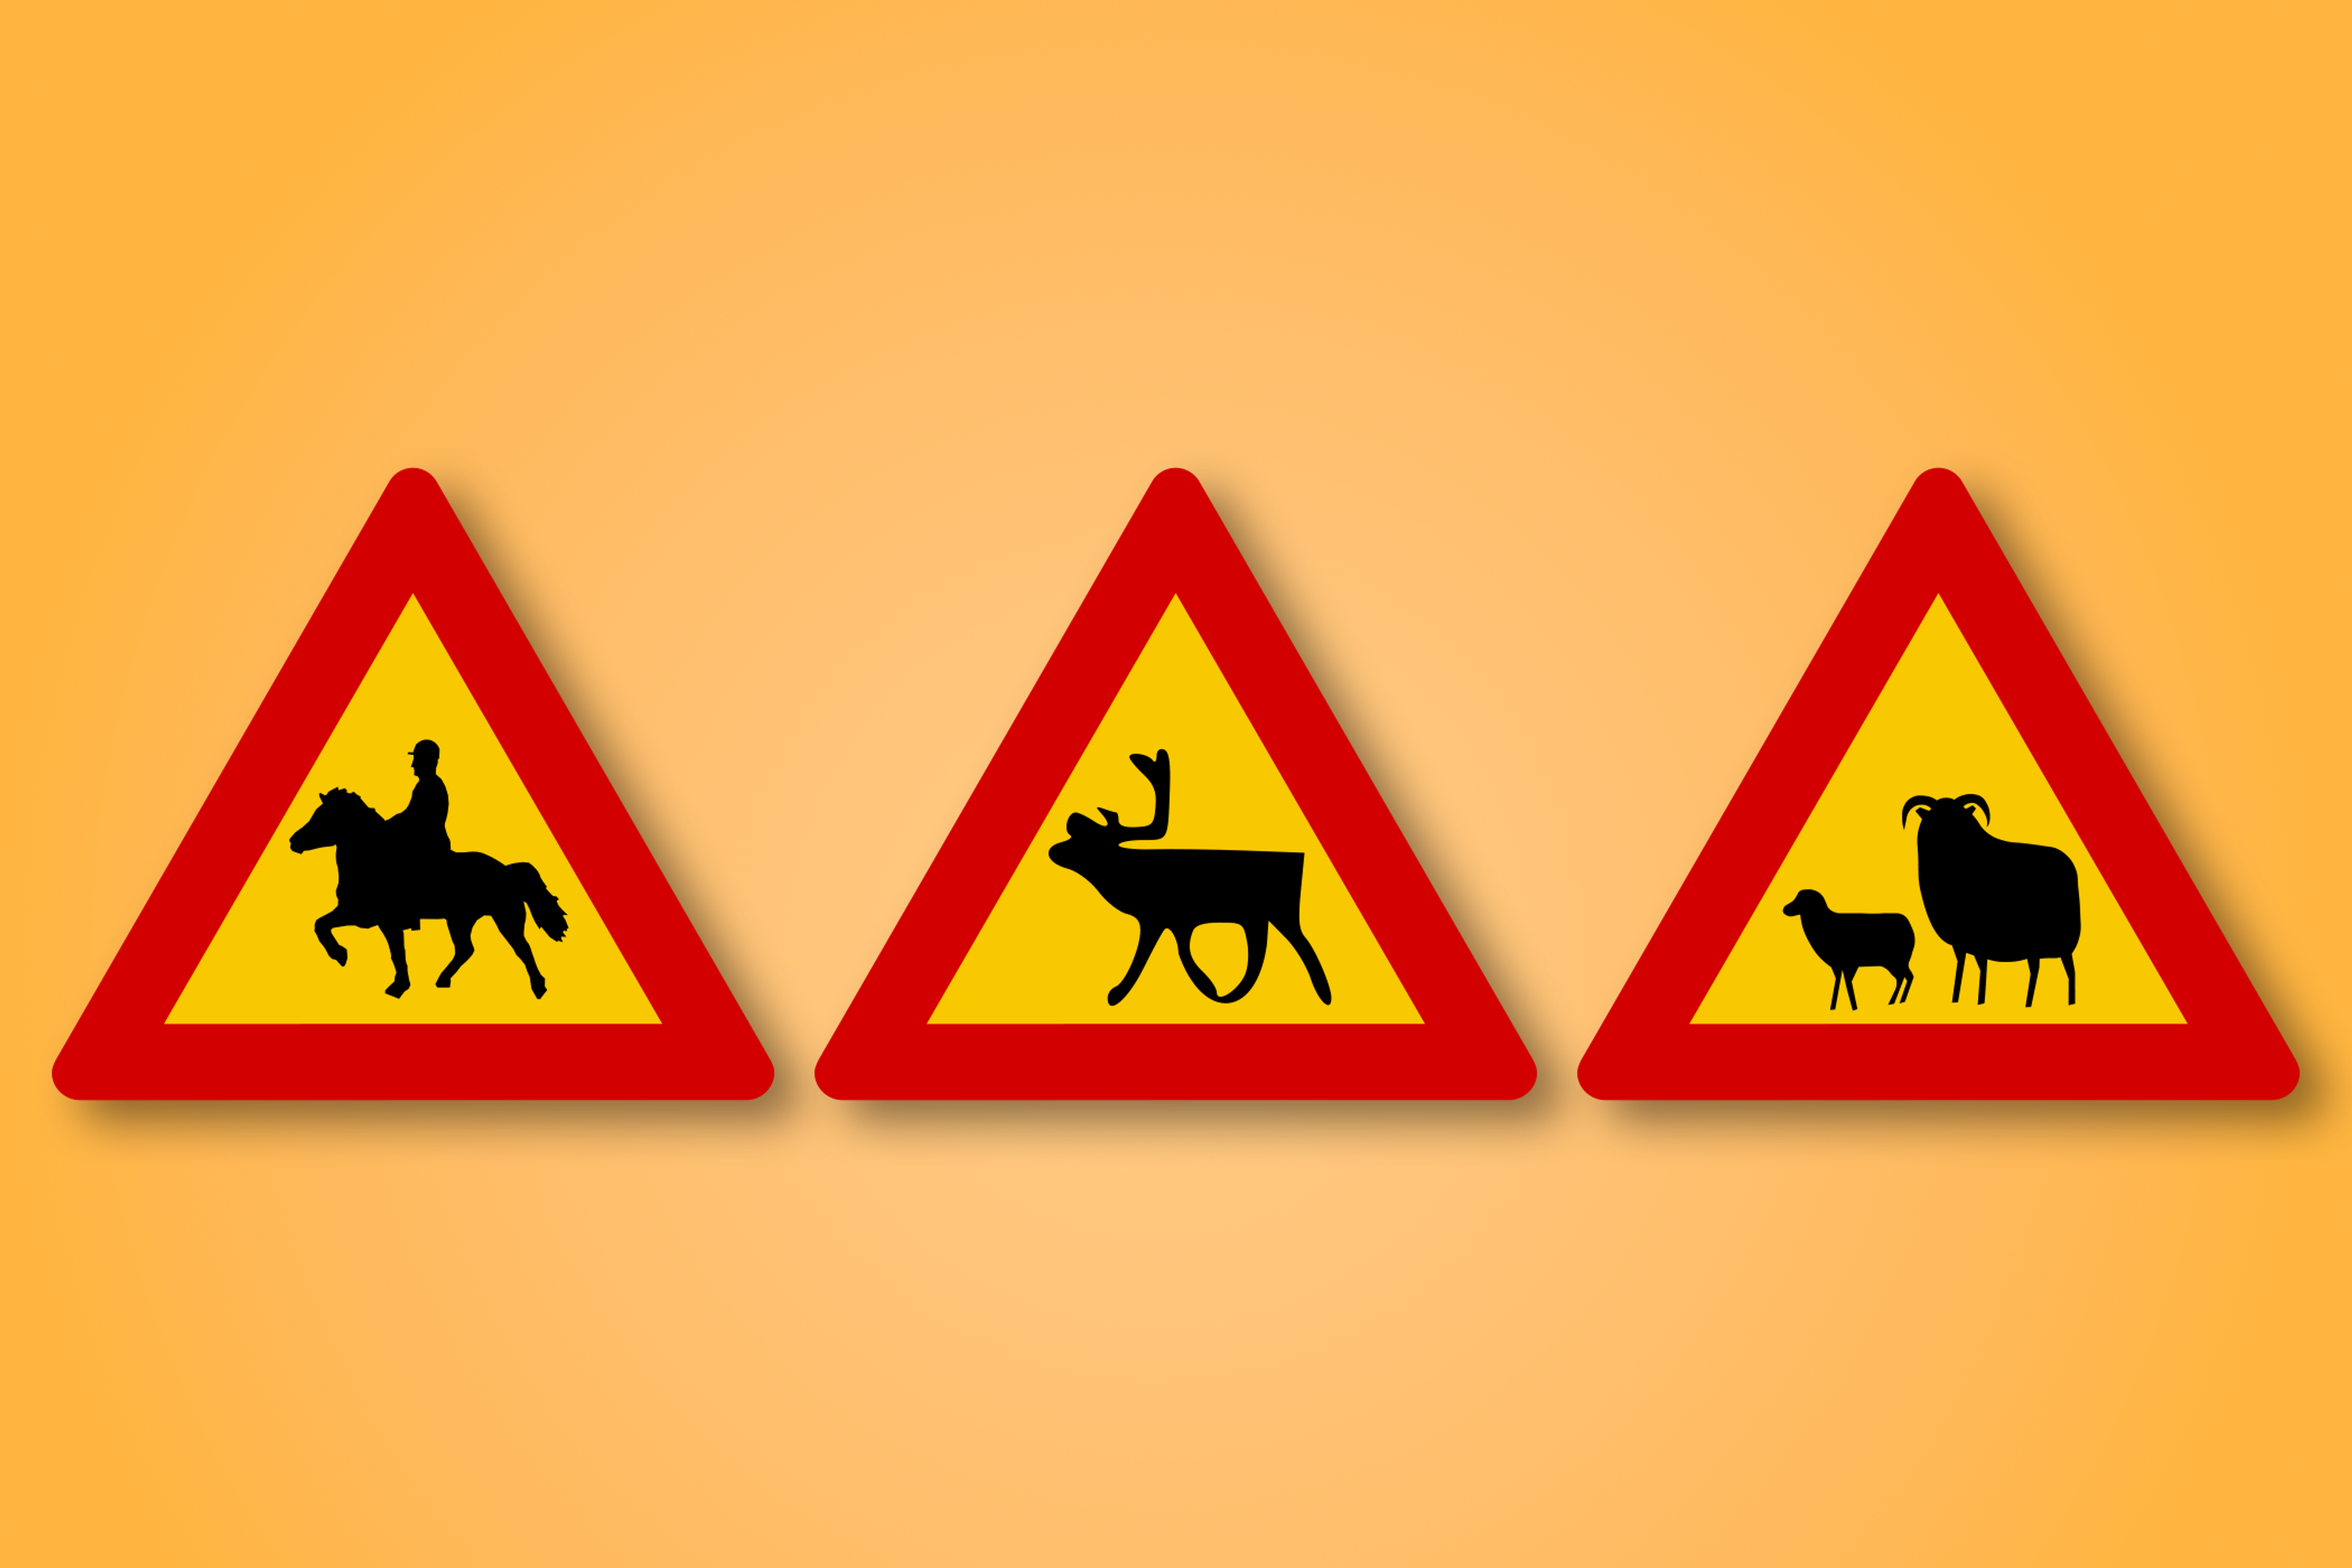 Signe de route triangle rouge et jaune avec des animaux au milieu. Ce signe de route signifie des animaux sur la route devant